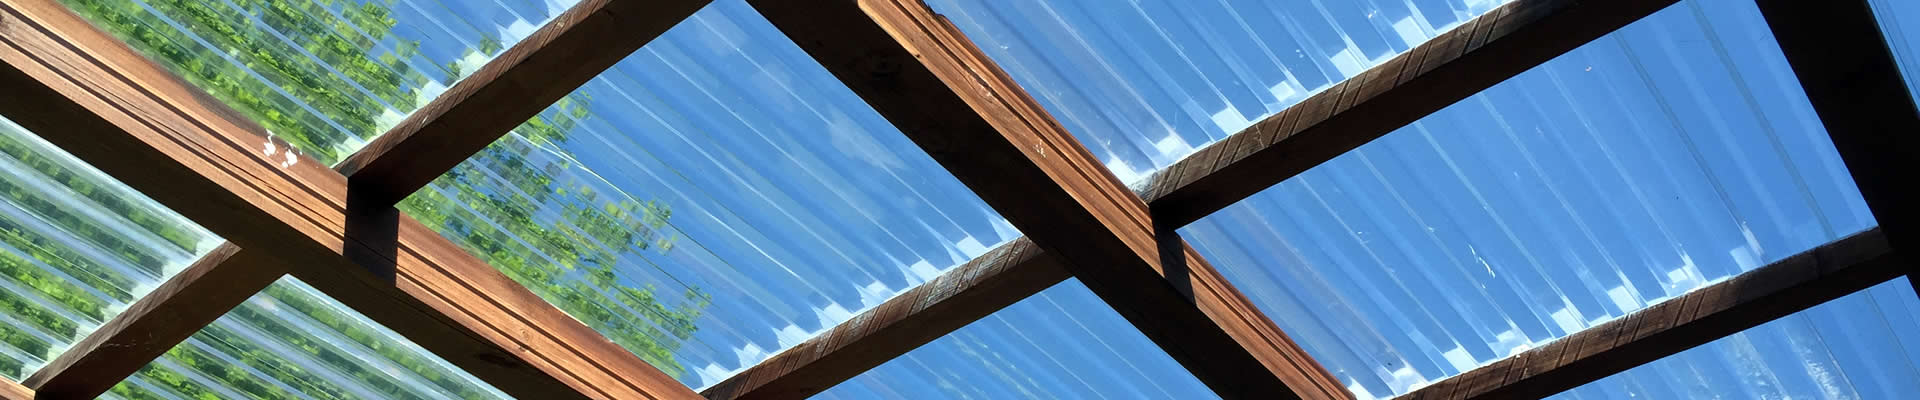 Terrassendach mi Wellplatten aus PVC, farblos